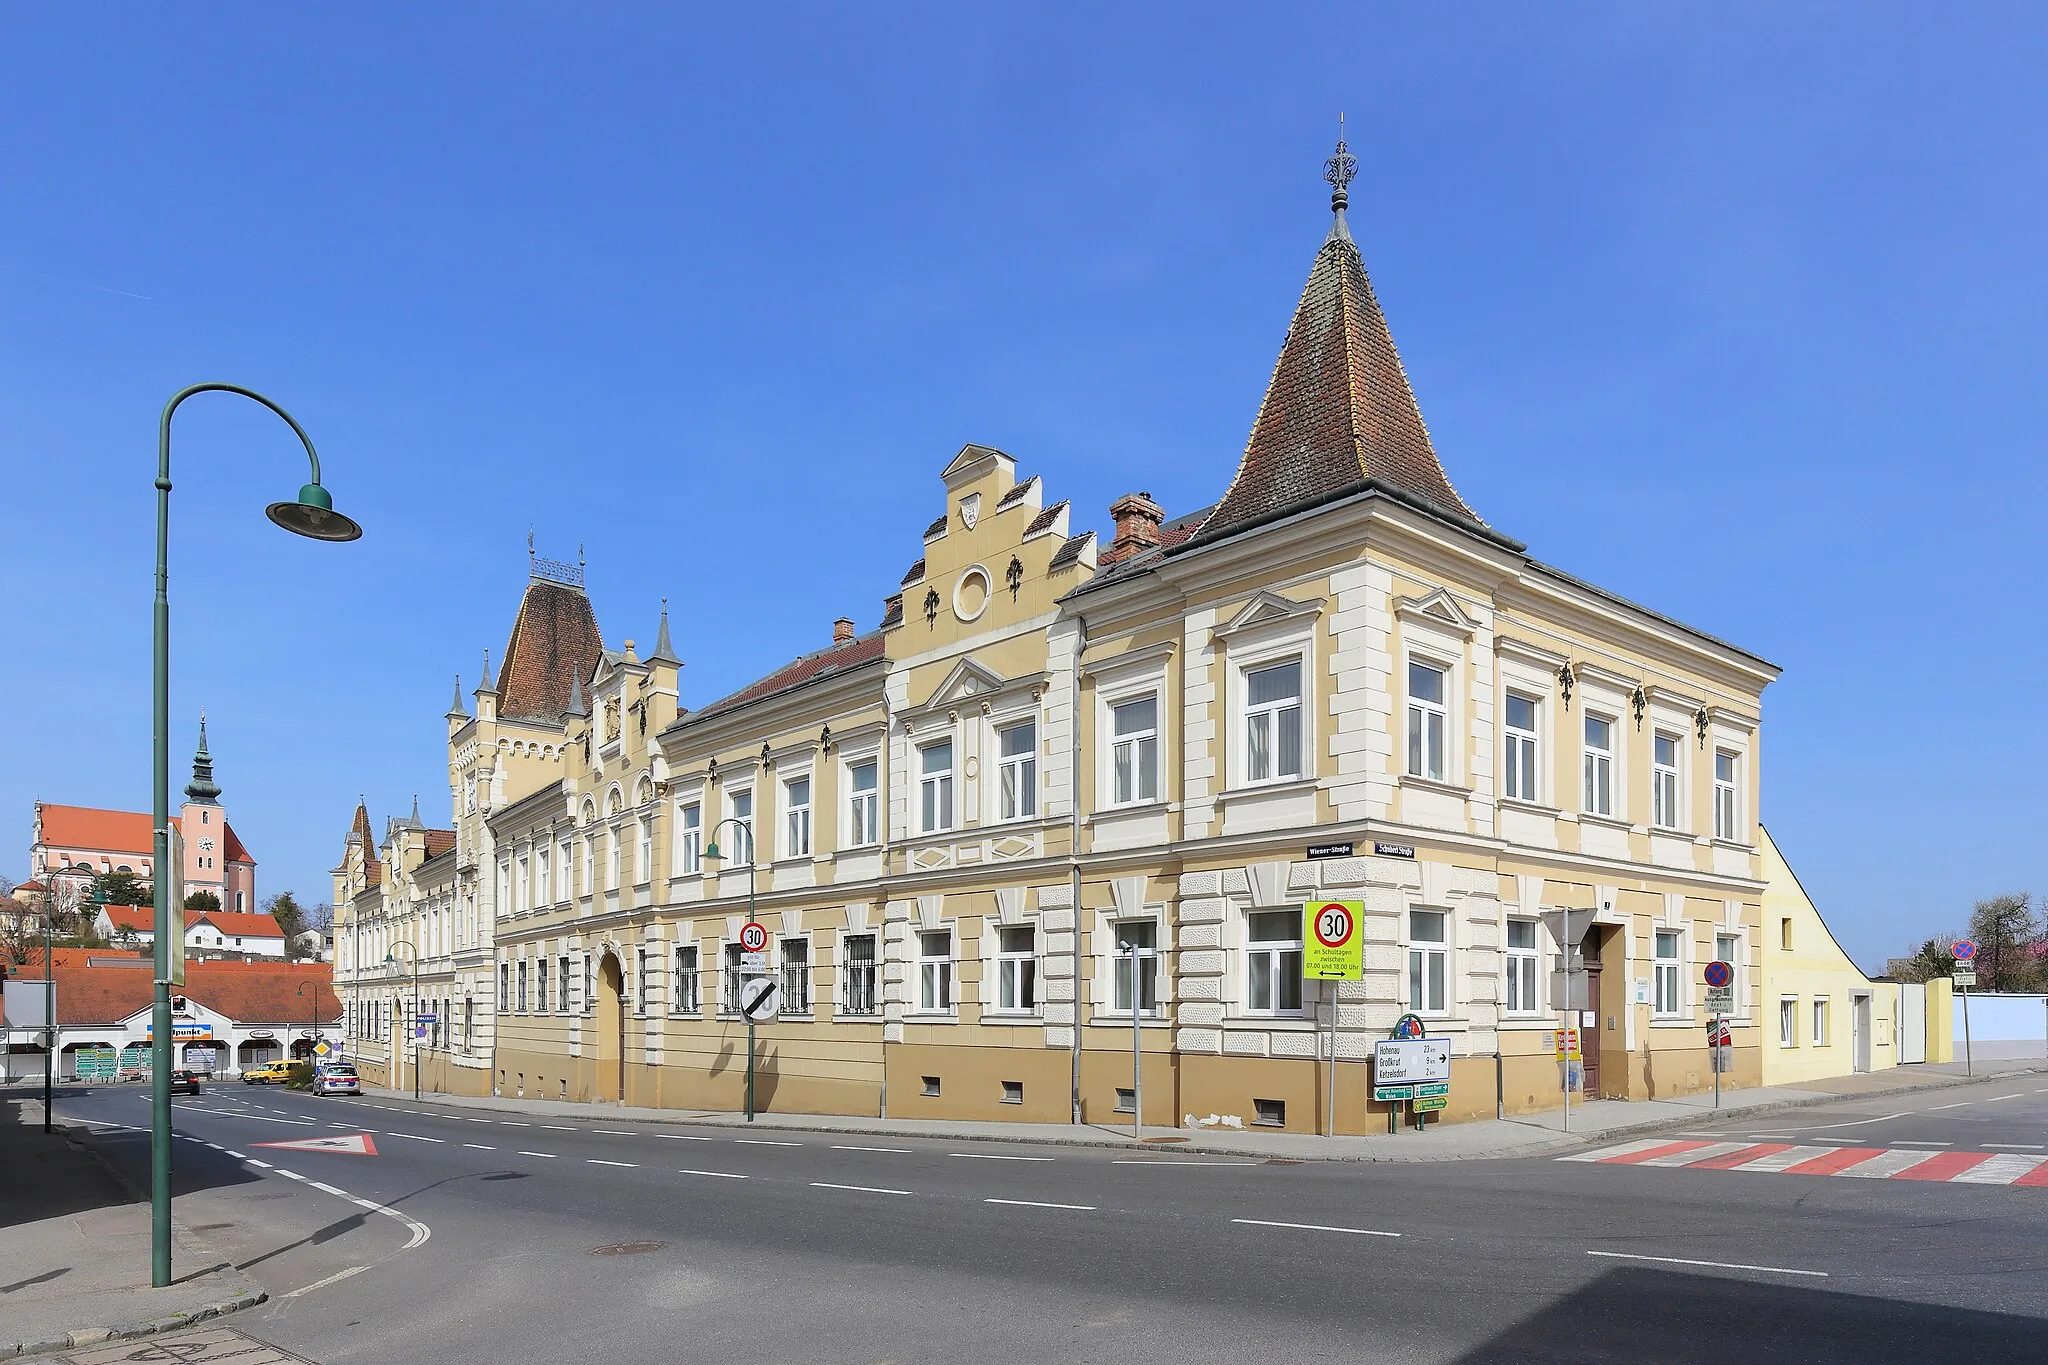 Photo showing: Ehemaliges Gerichts- und Amtsgebäude in der niederösterreichischen Stadt Poysdorf. Das Gebäude wurde nach Plänen von Eugen Sehnal 1897 errichtet.